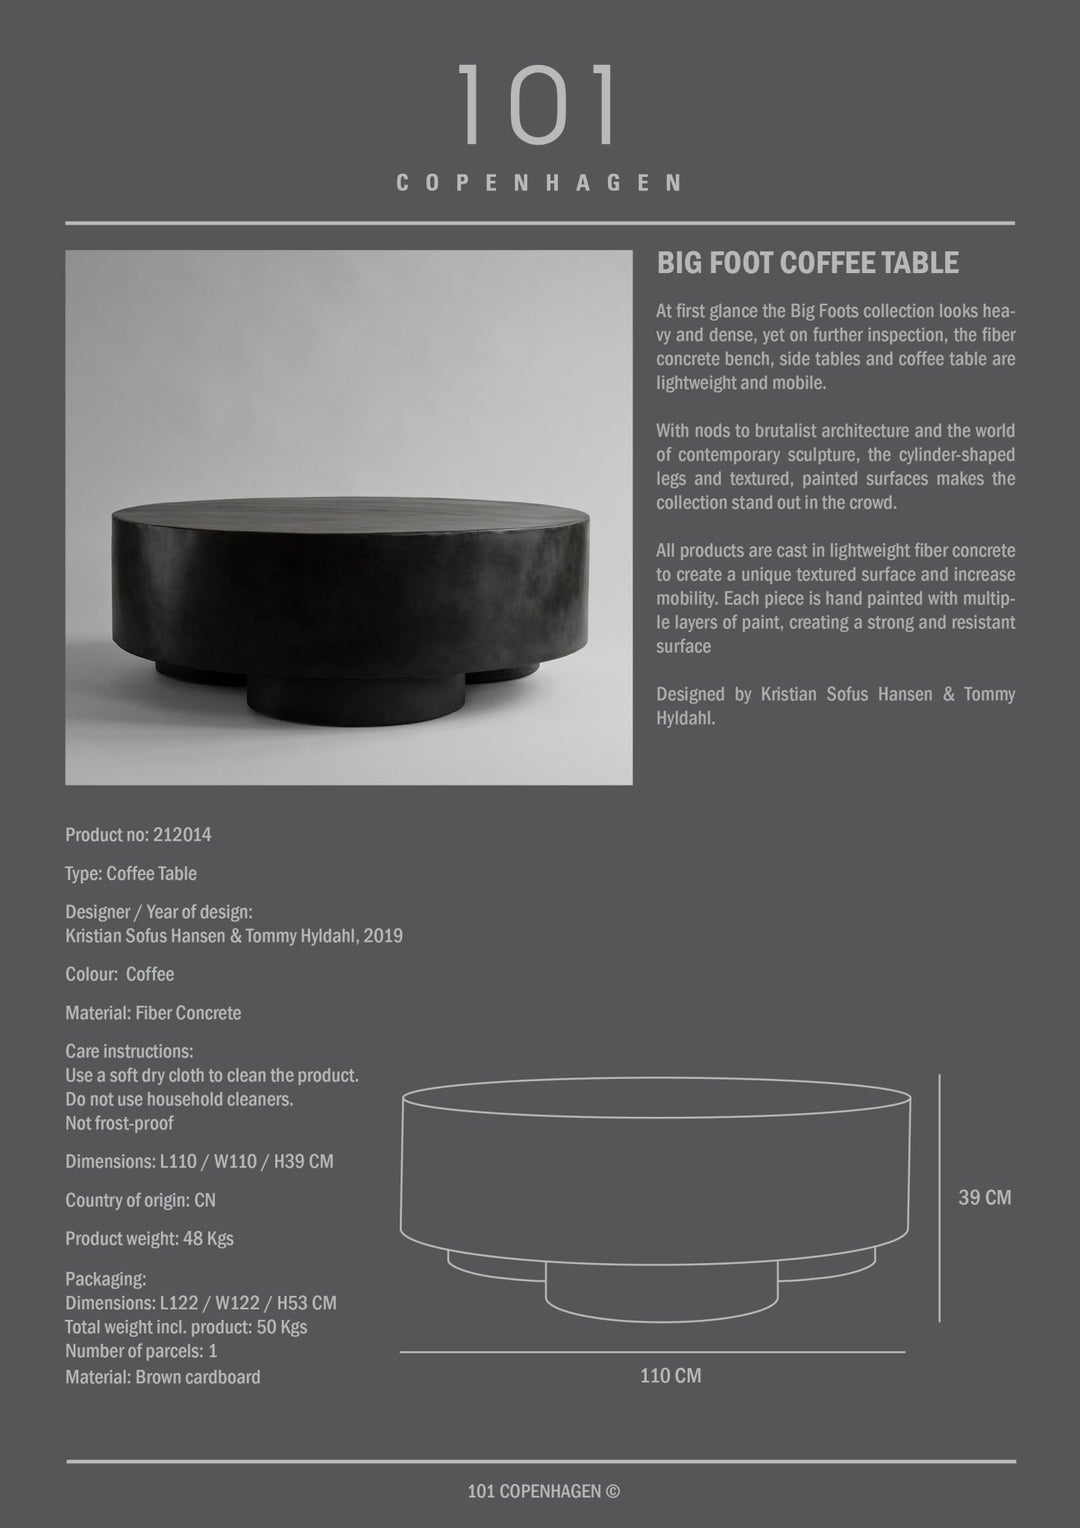 101 Copenhagen Big Foot Coffee Table - $2,495.00